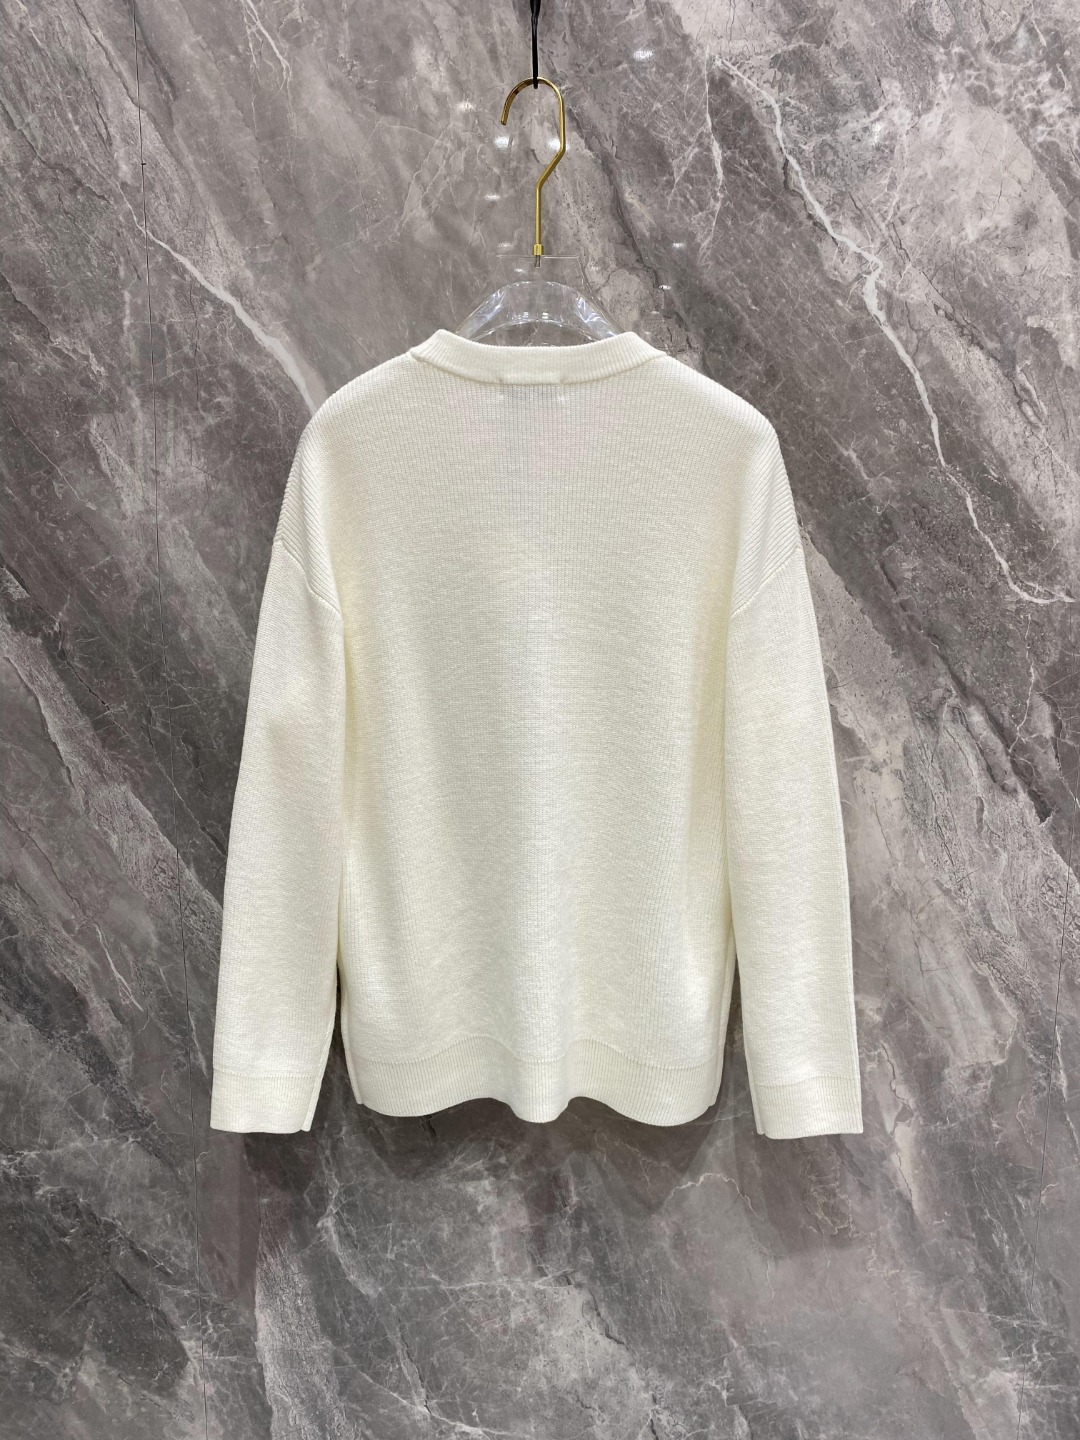 ロエベ 素材コピー 暖かい トップス 長袖セーター シンプル 品質保証 ファッション ホワイト_2